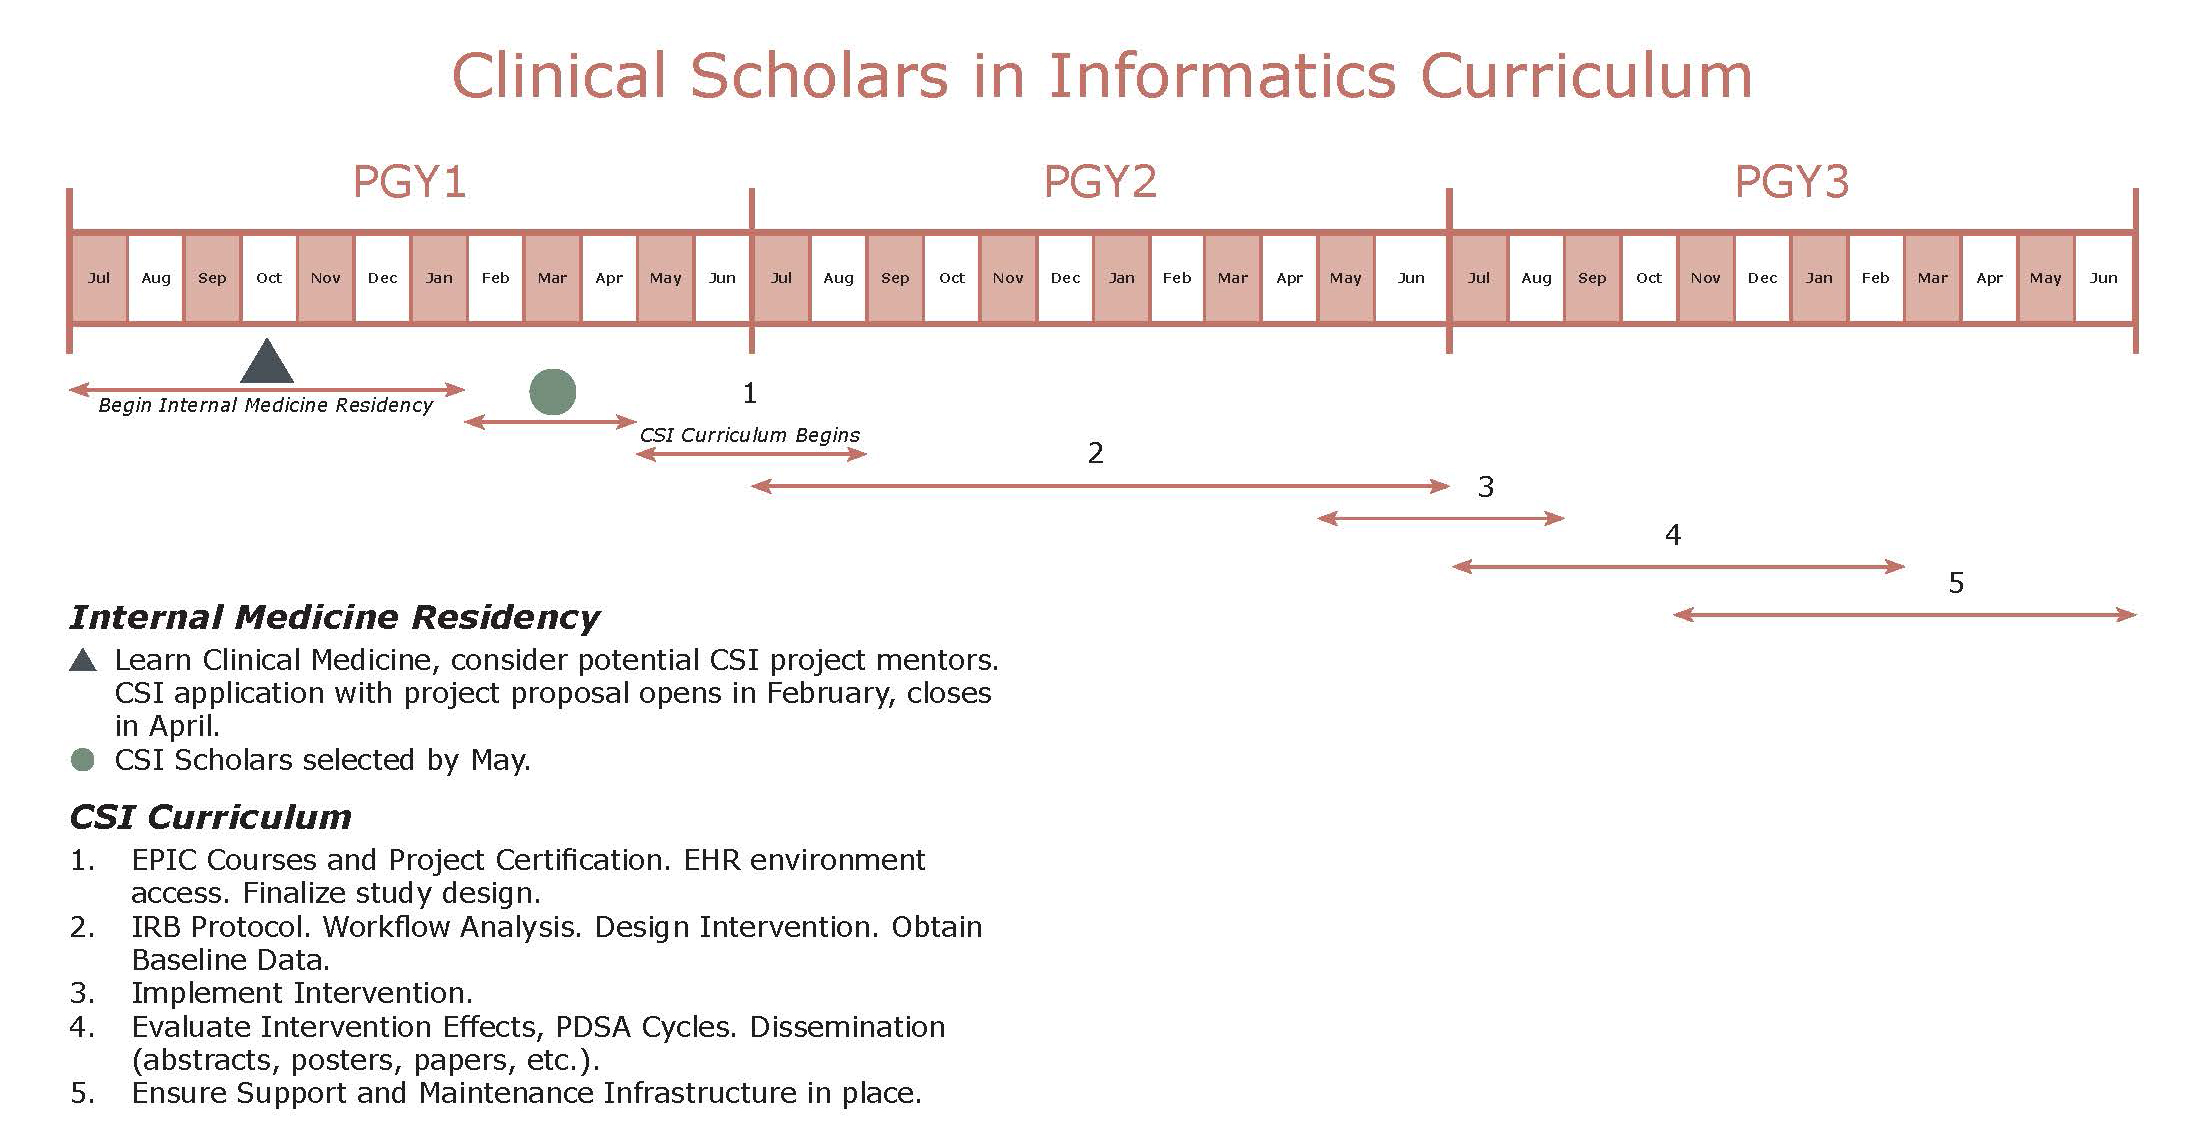 Clinical Scholars in Informatics Curriculum schedule